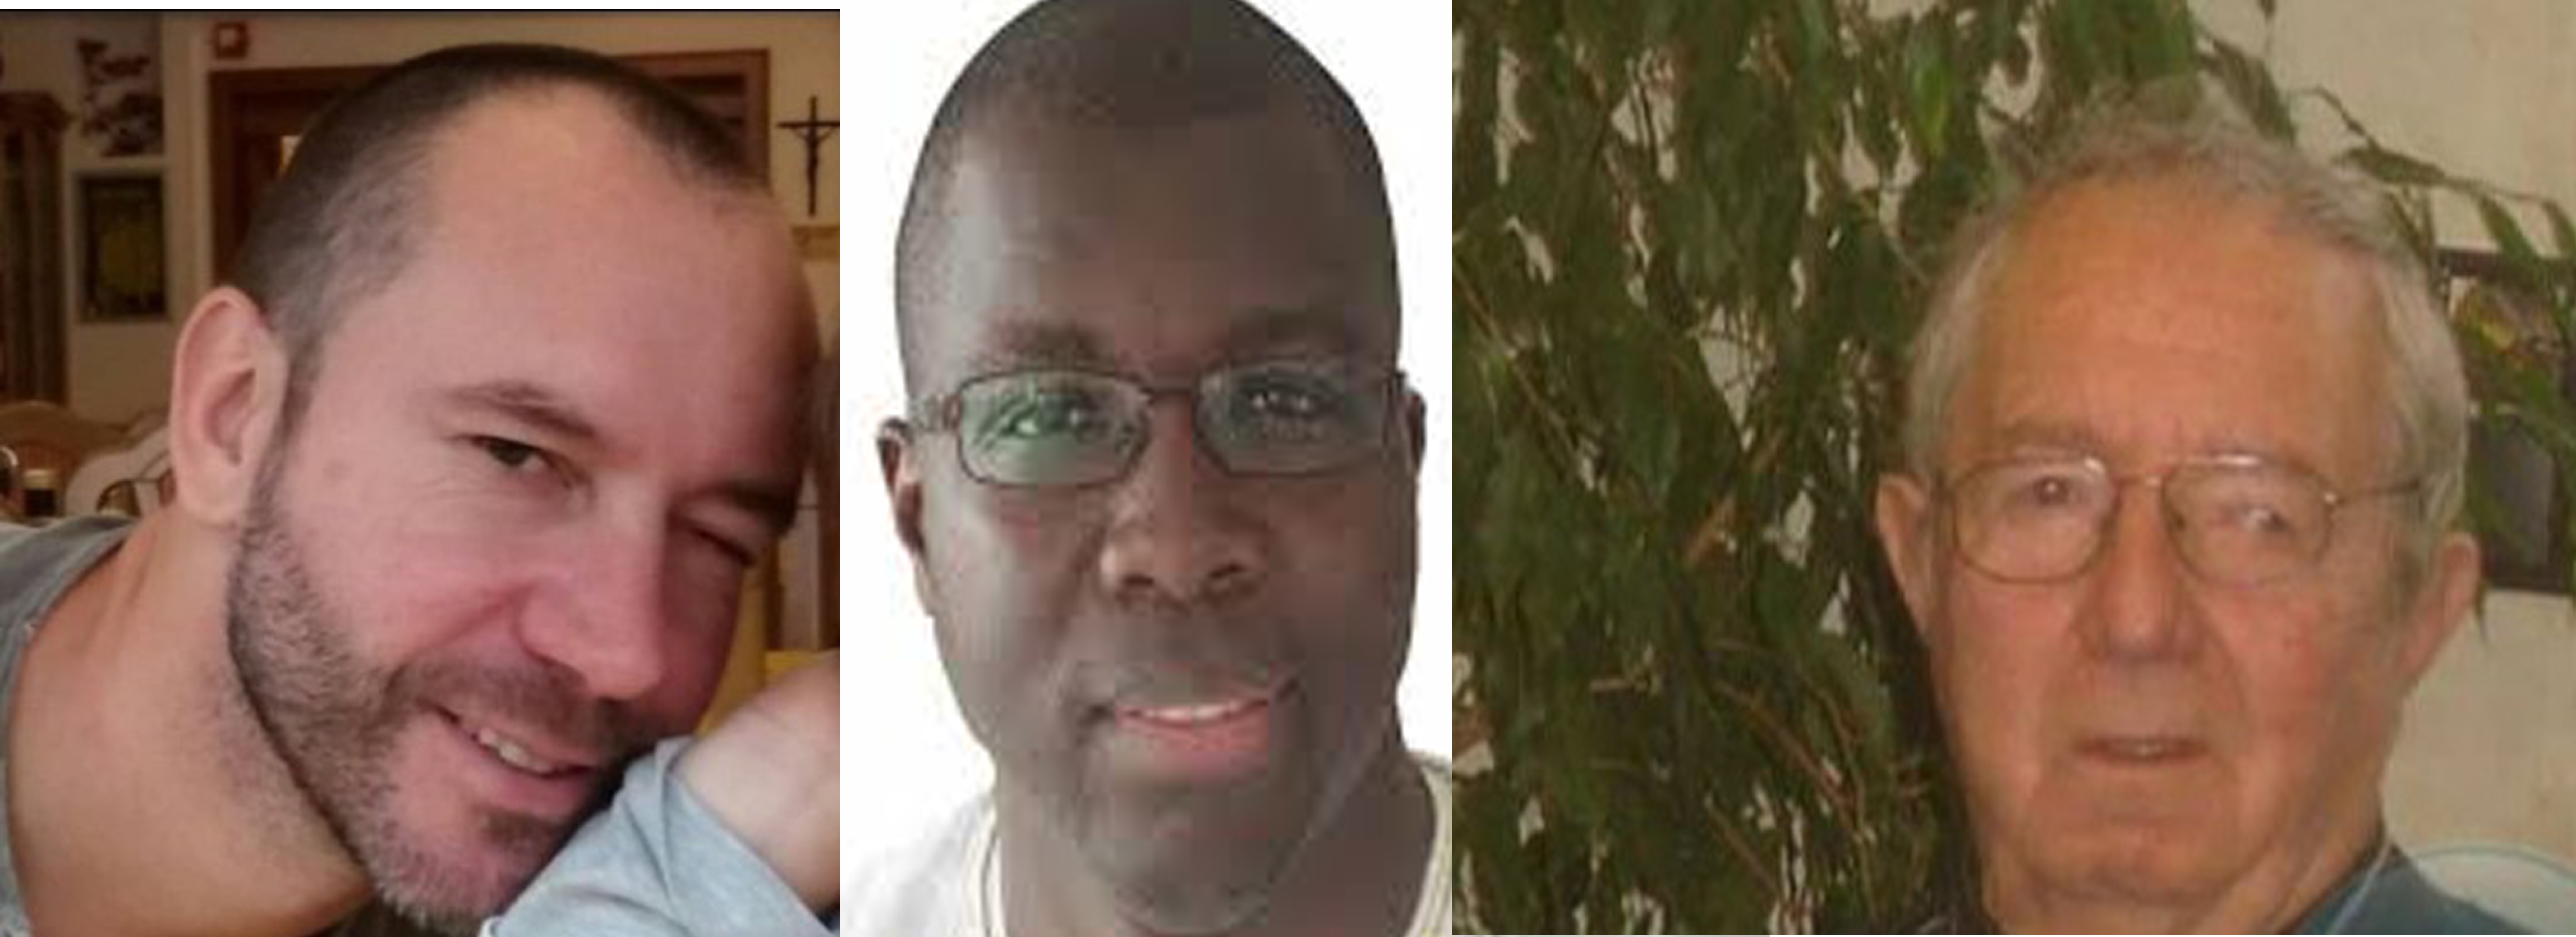 COLLECTIF DES VICTIMES DE SALIOU SAMB, PRESIDENT DU STADE DE MBOUR «Nous lançons un dernier ultimatum à Saliou Samb pour rembourser ses victimes »